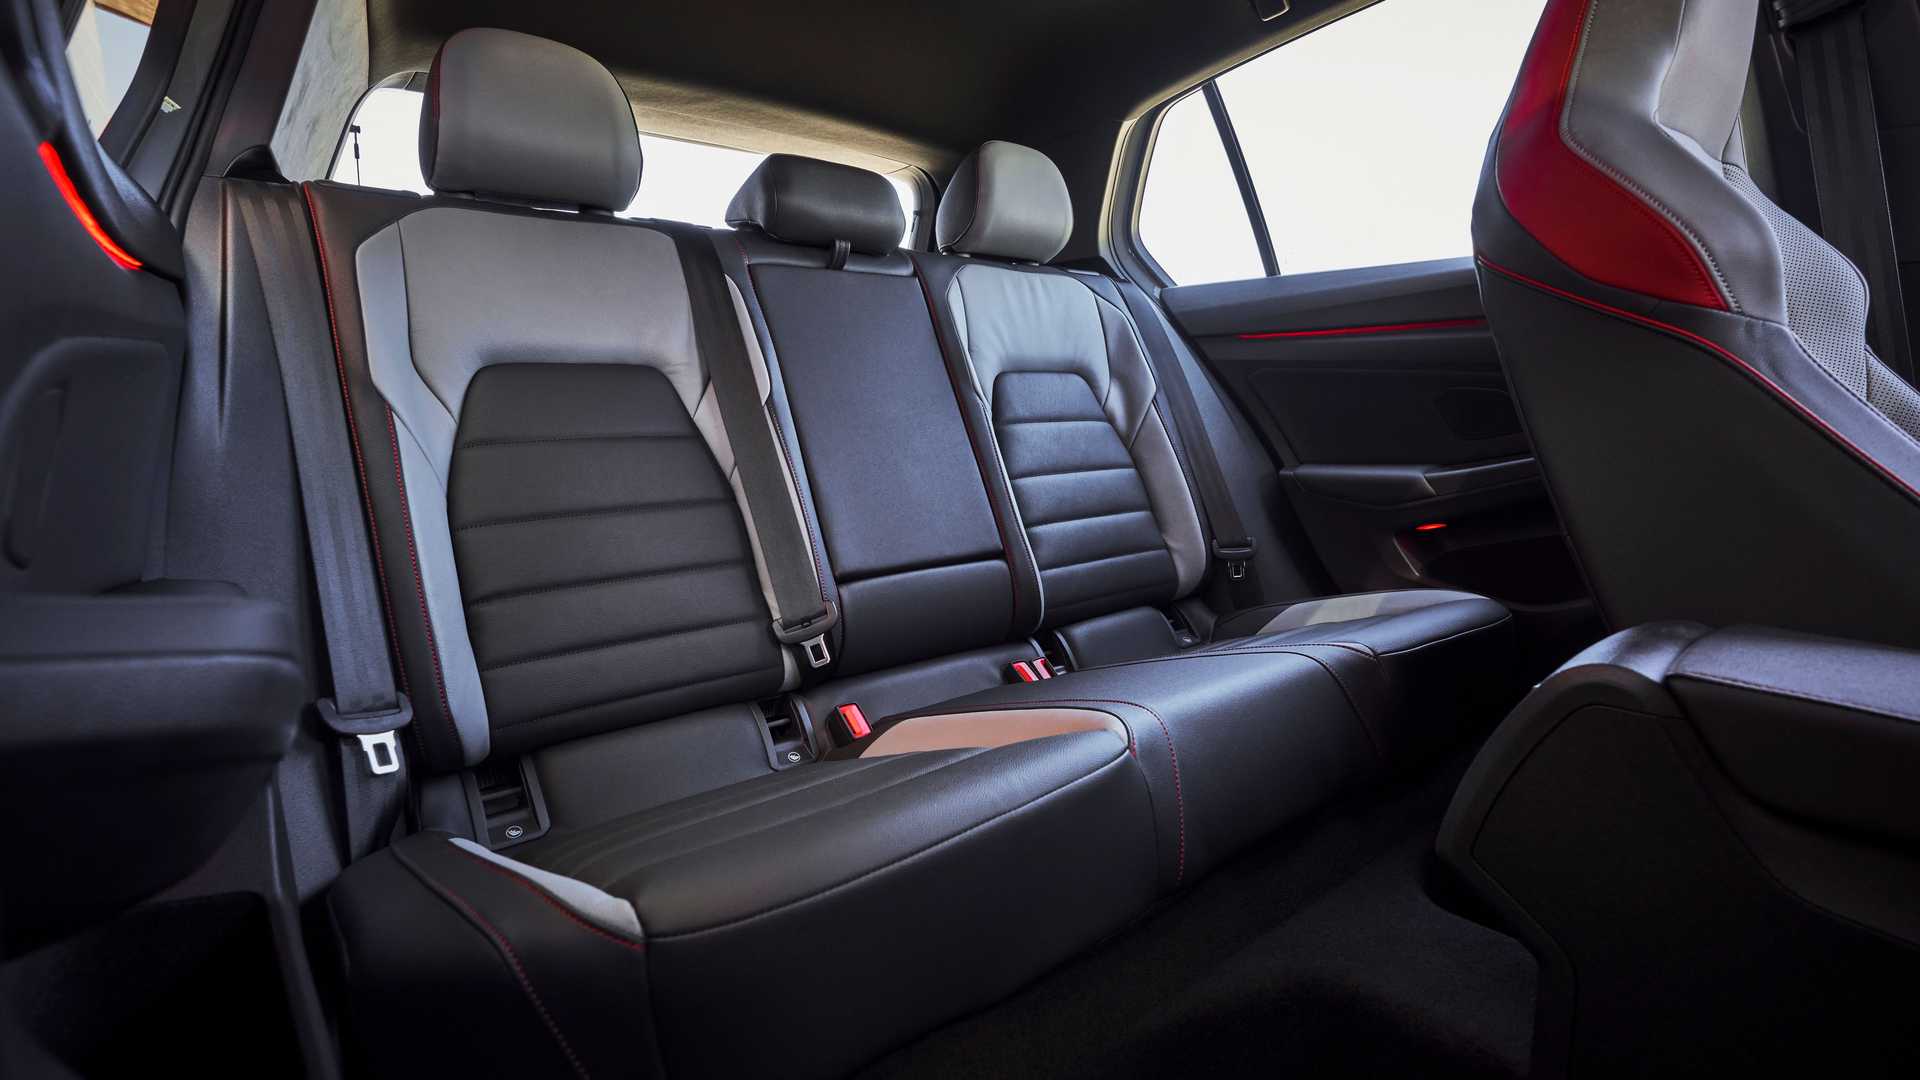 New 2022 Volkswagen Golf GTI - Hear The Exhaust Sound Hatchback Grey